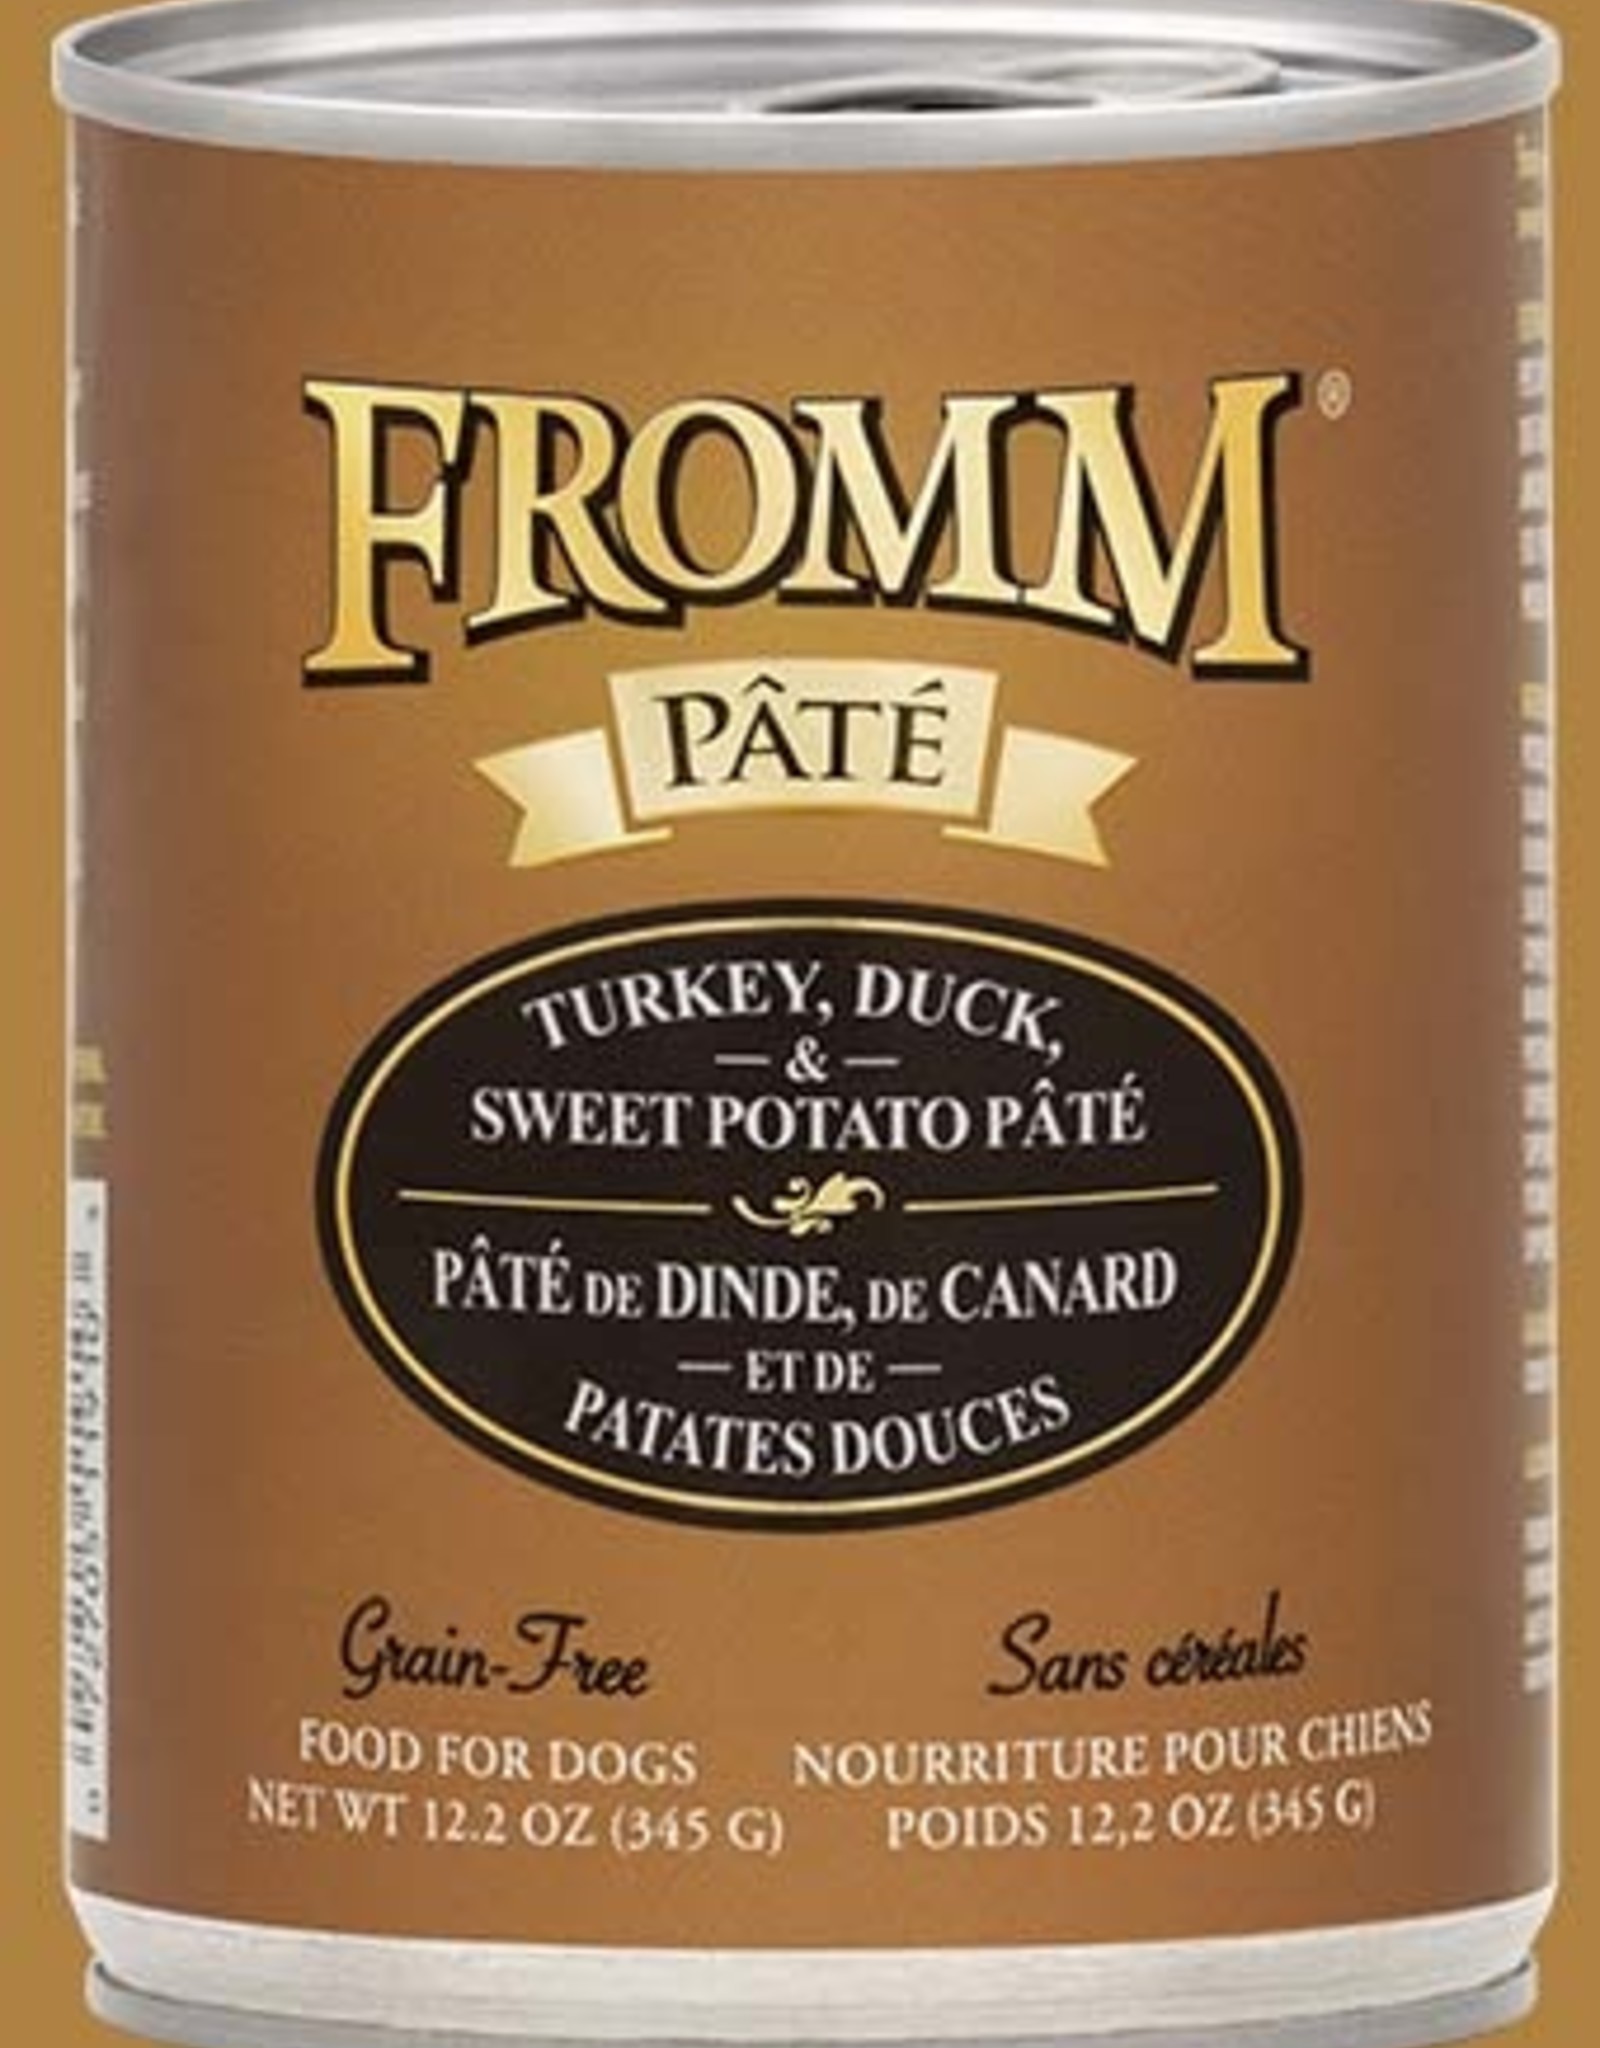 Fromm Turkey, Duck, & Sweet Potato Pate 12oz